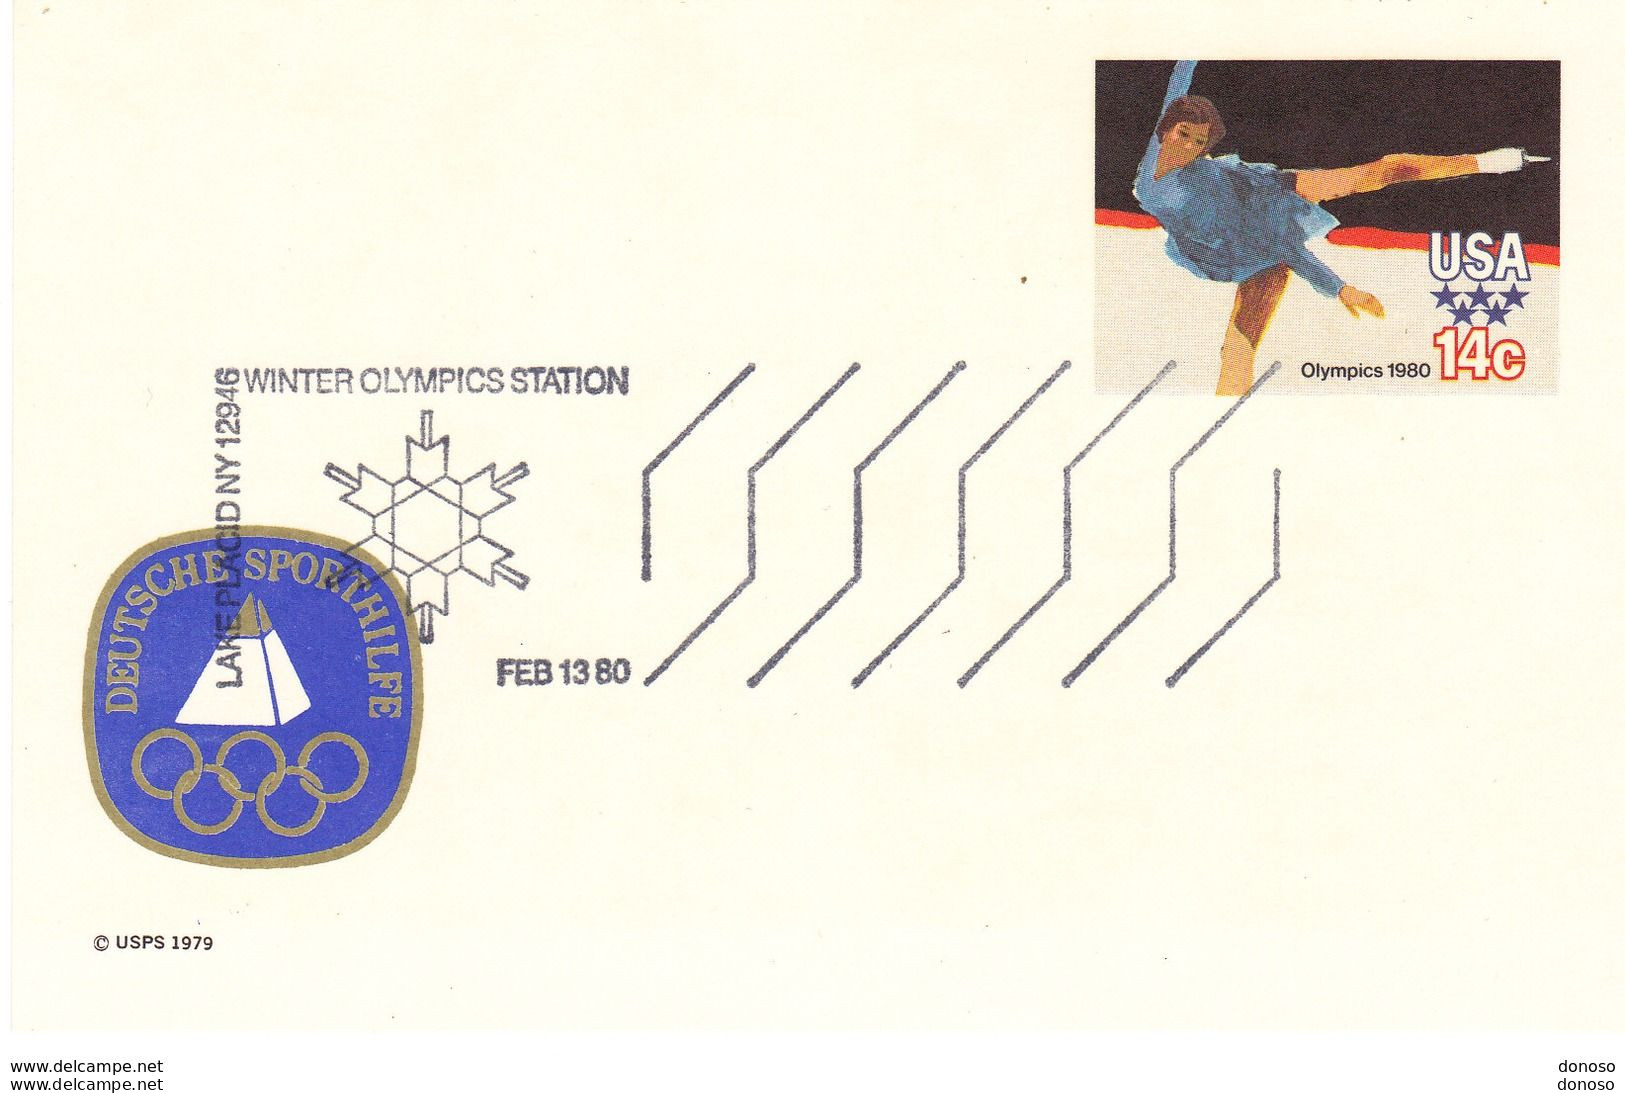 USA 1980 Jeux Olympiques LAKE PLACID Patinage équipe Allemande - Souvenirkarten